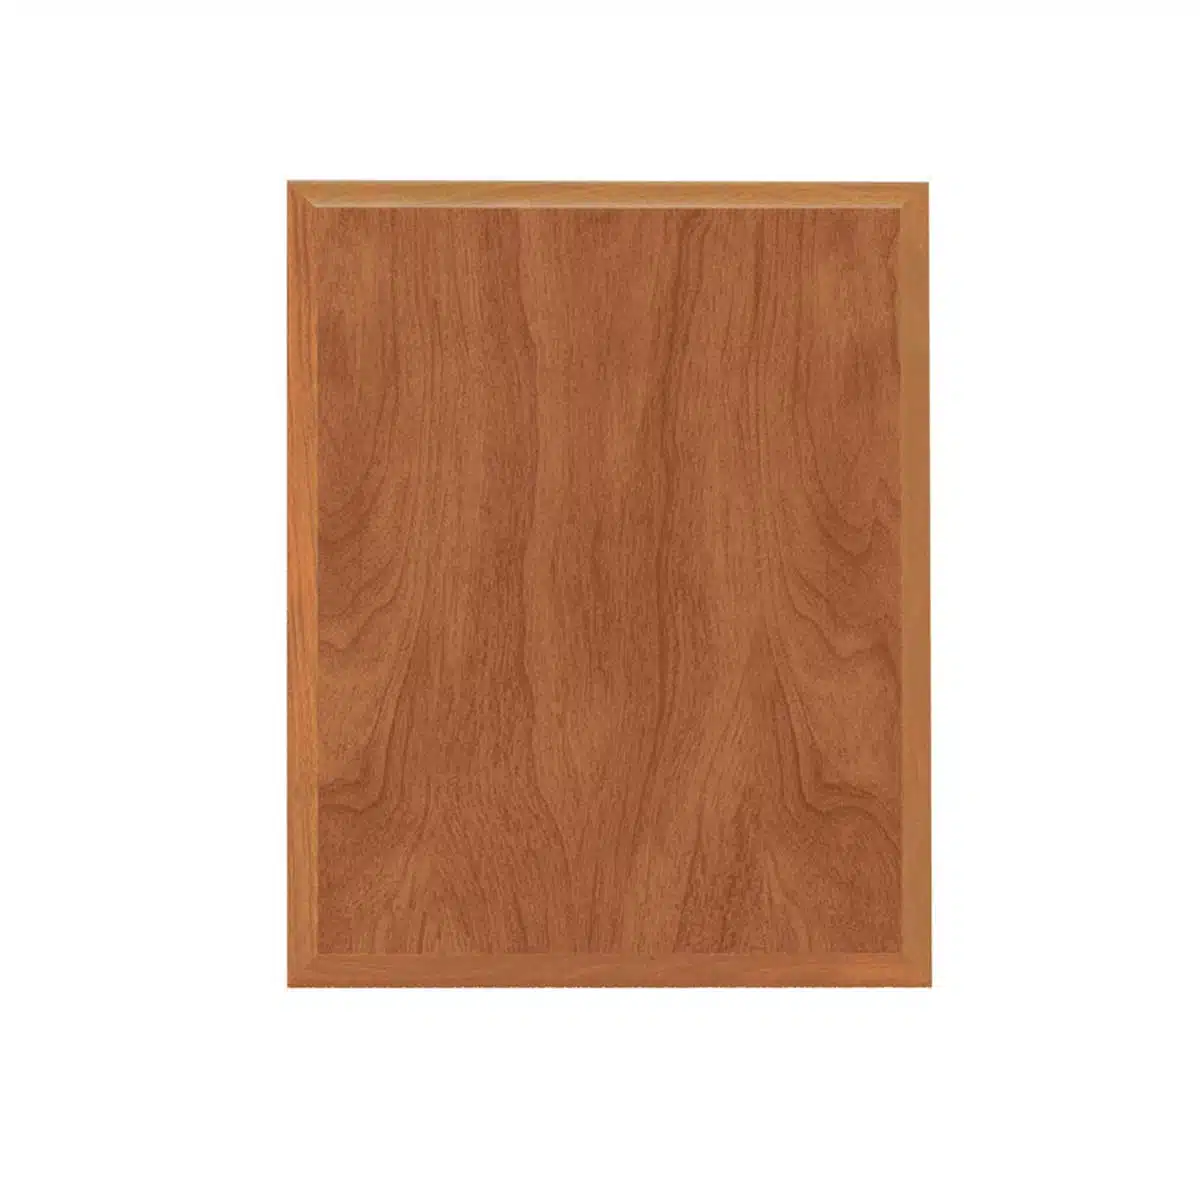 golden maple wood plaque